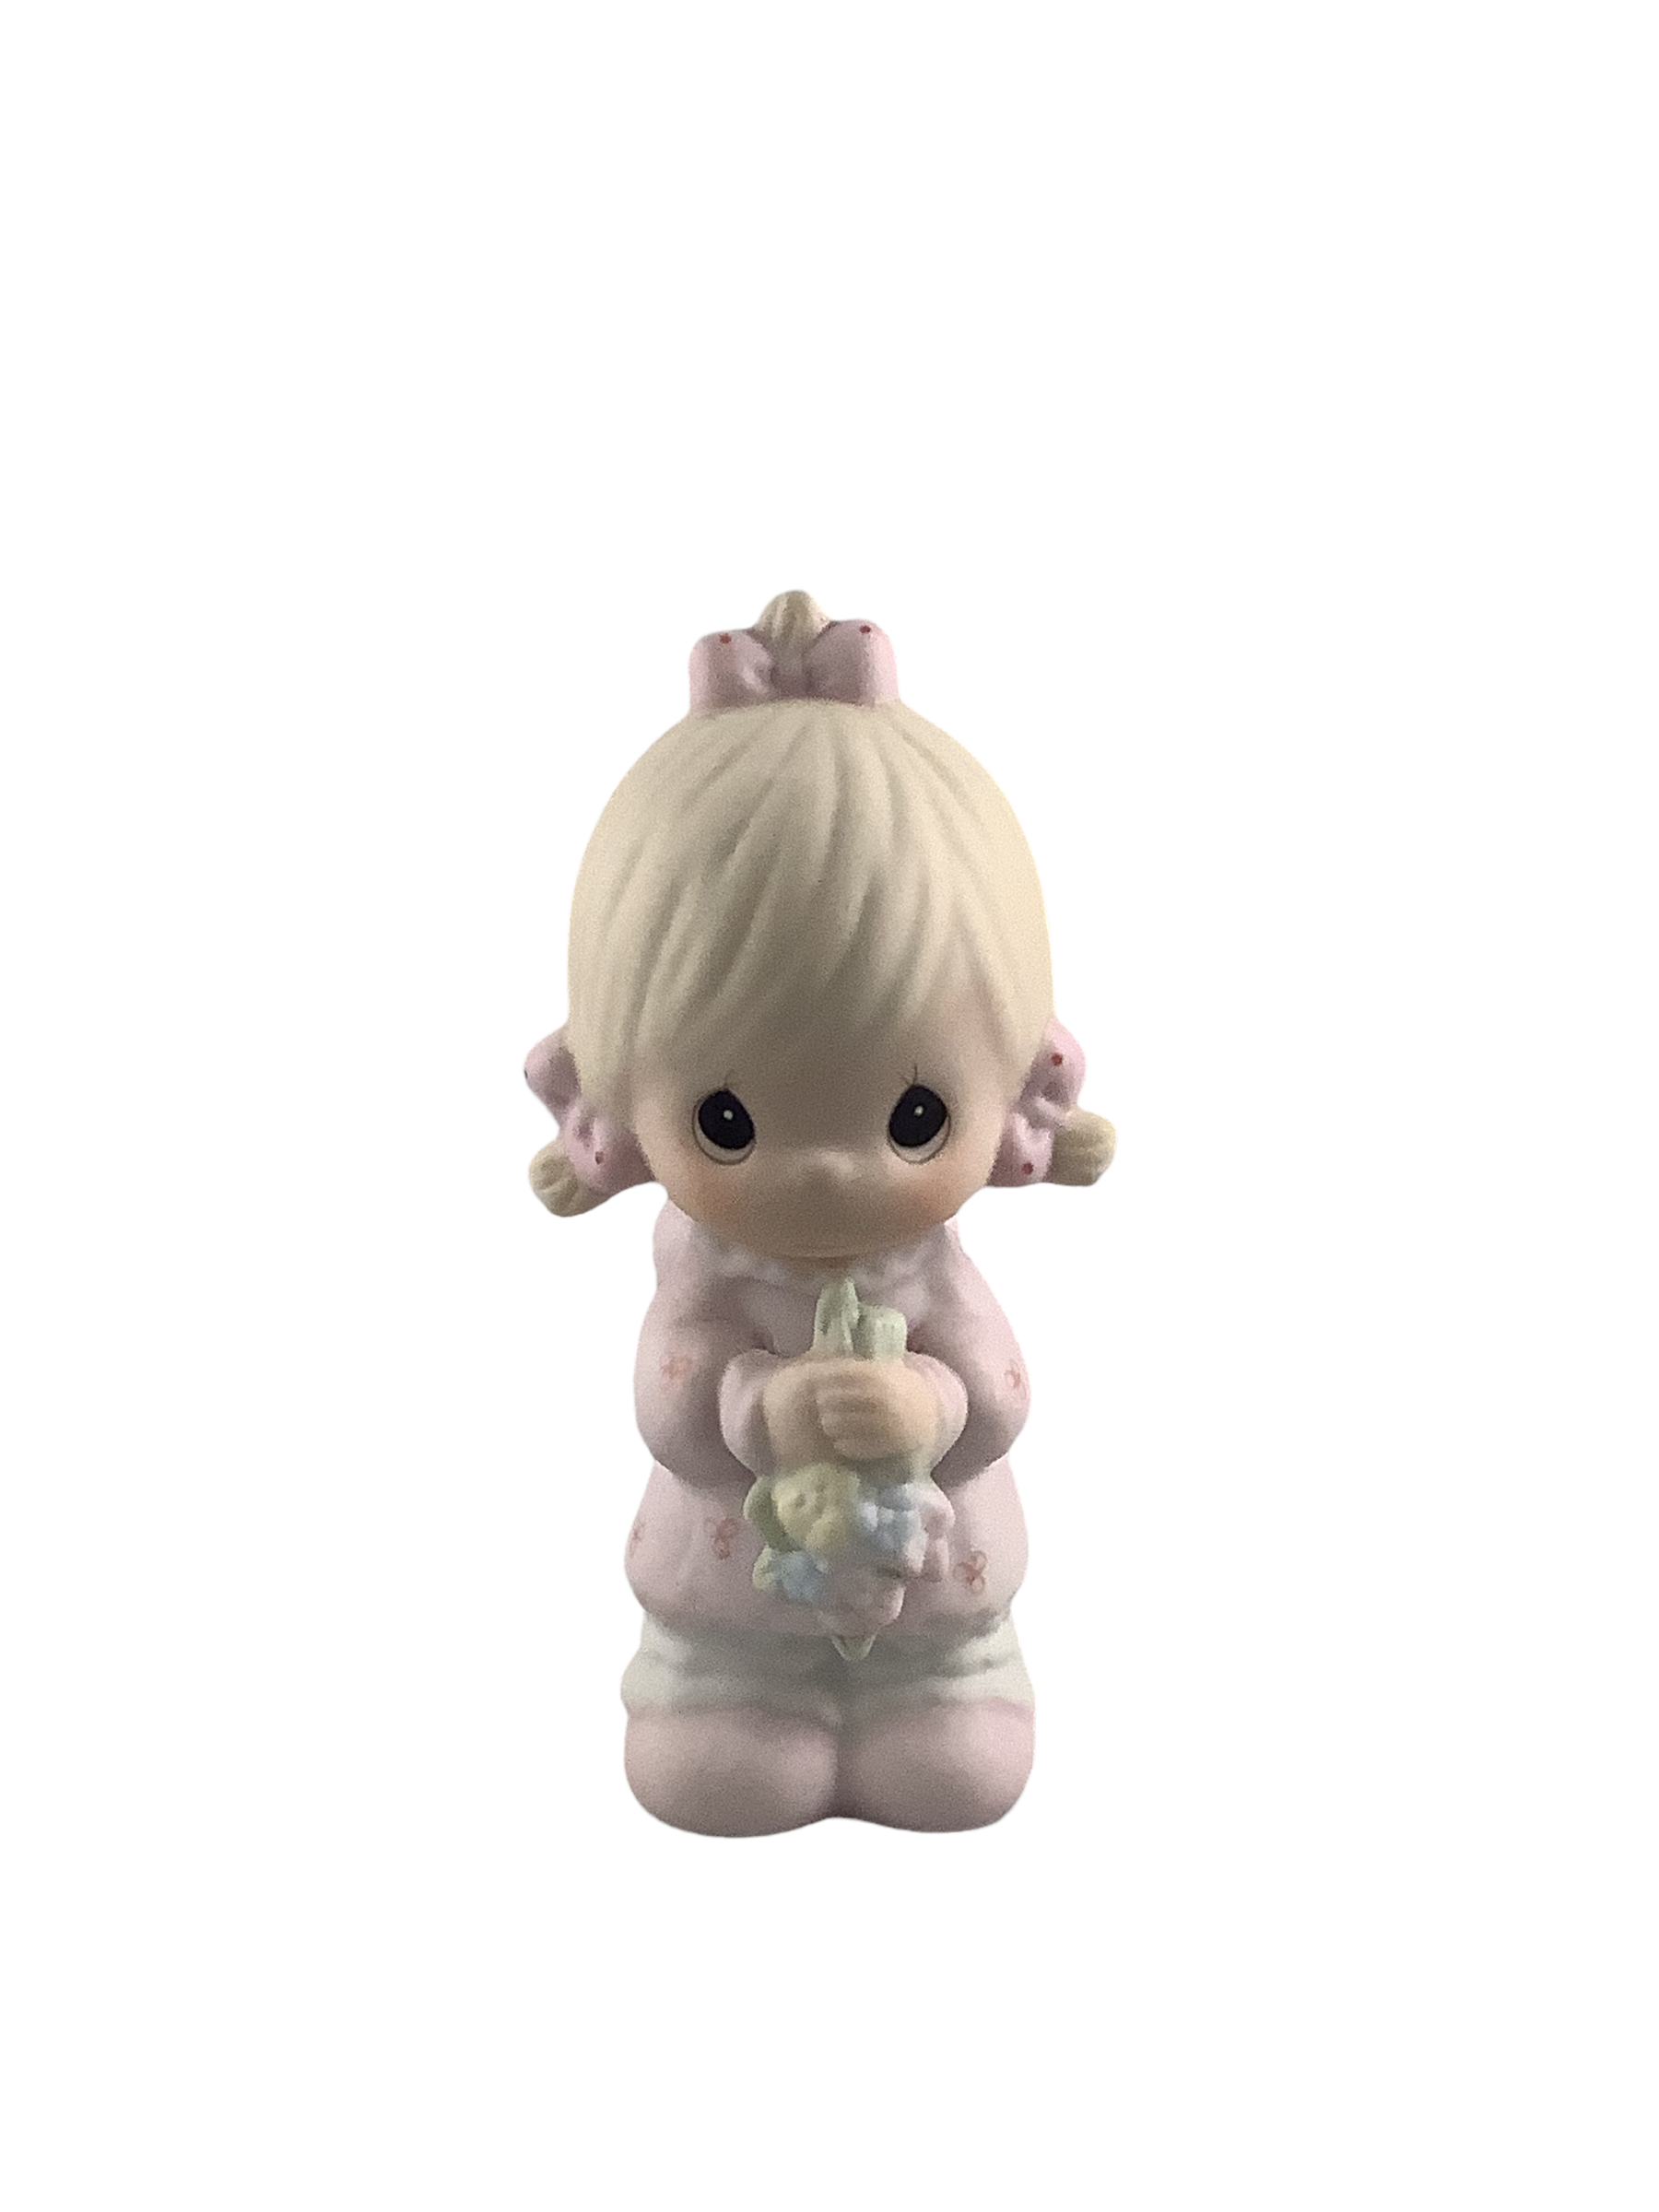 Flower Girl - Precious Moment Figurine